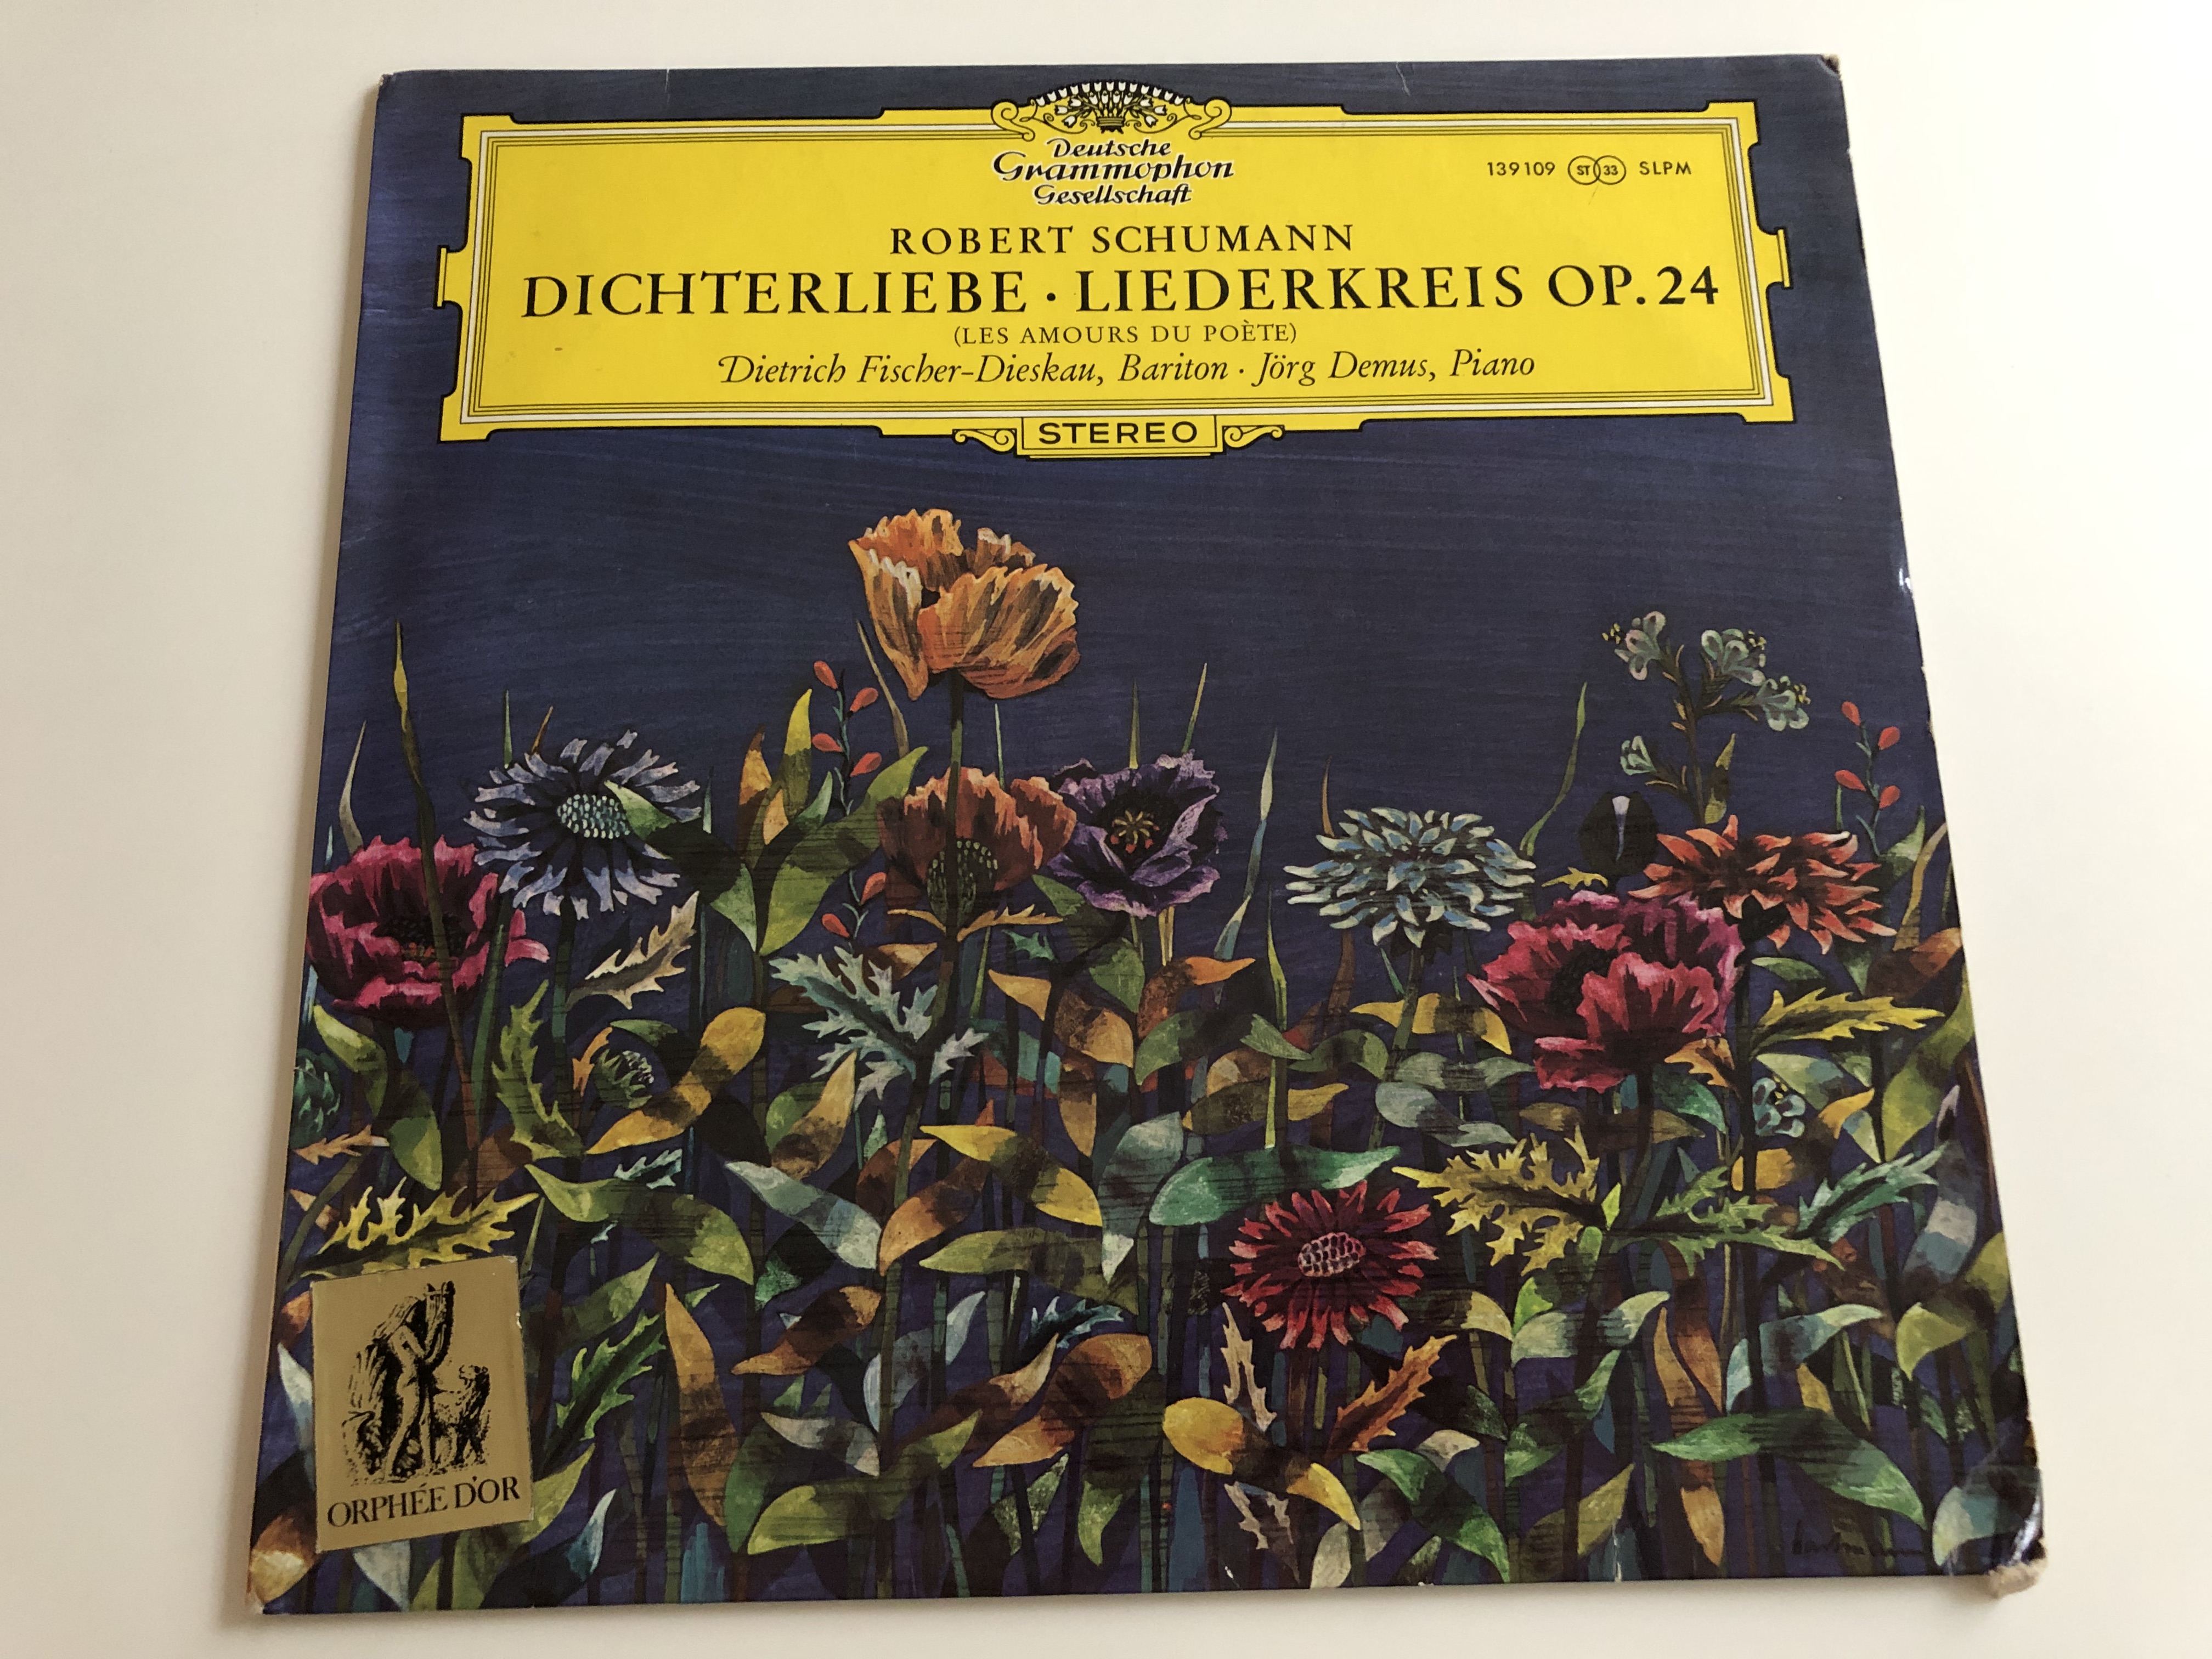 robert-schumann-dichterliebe-liederkreis-op.-24-dietrich-fischer-dieskau-bariton-j-rg-demus-deutsche-grammophon-lp-stereo-139-109-slpm-1-.jpg